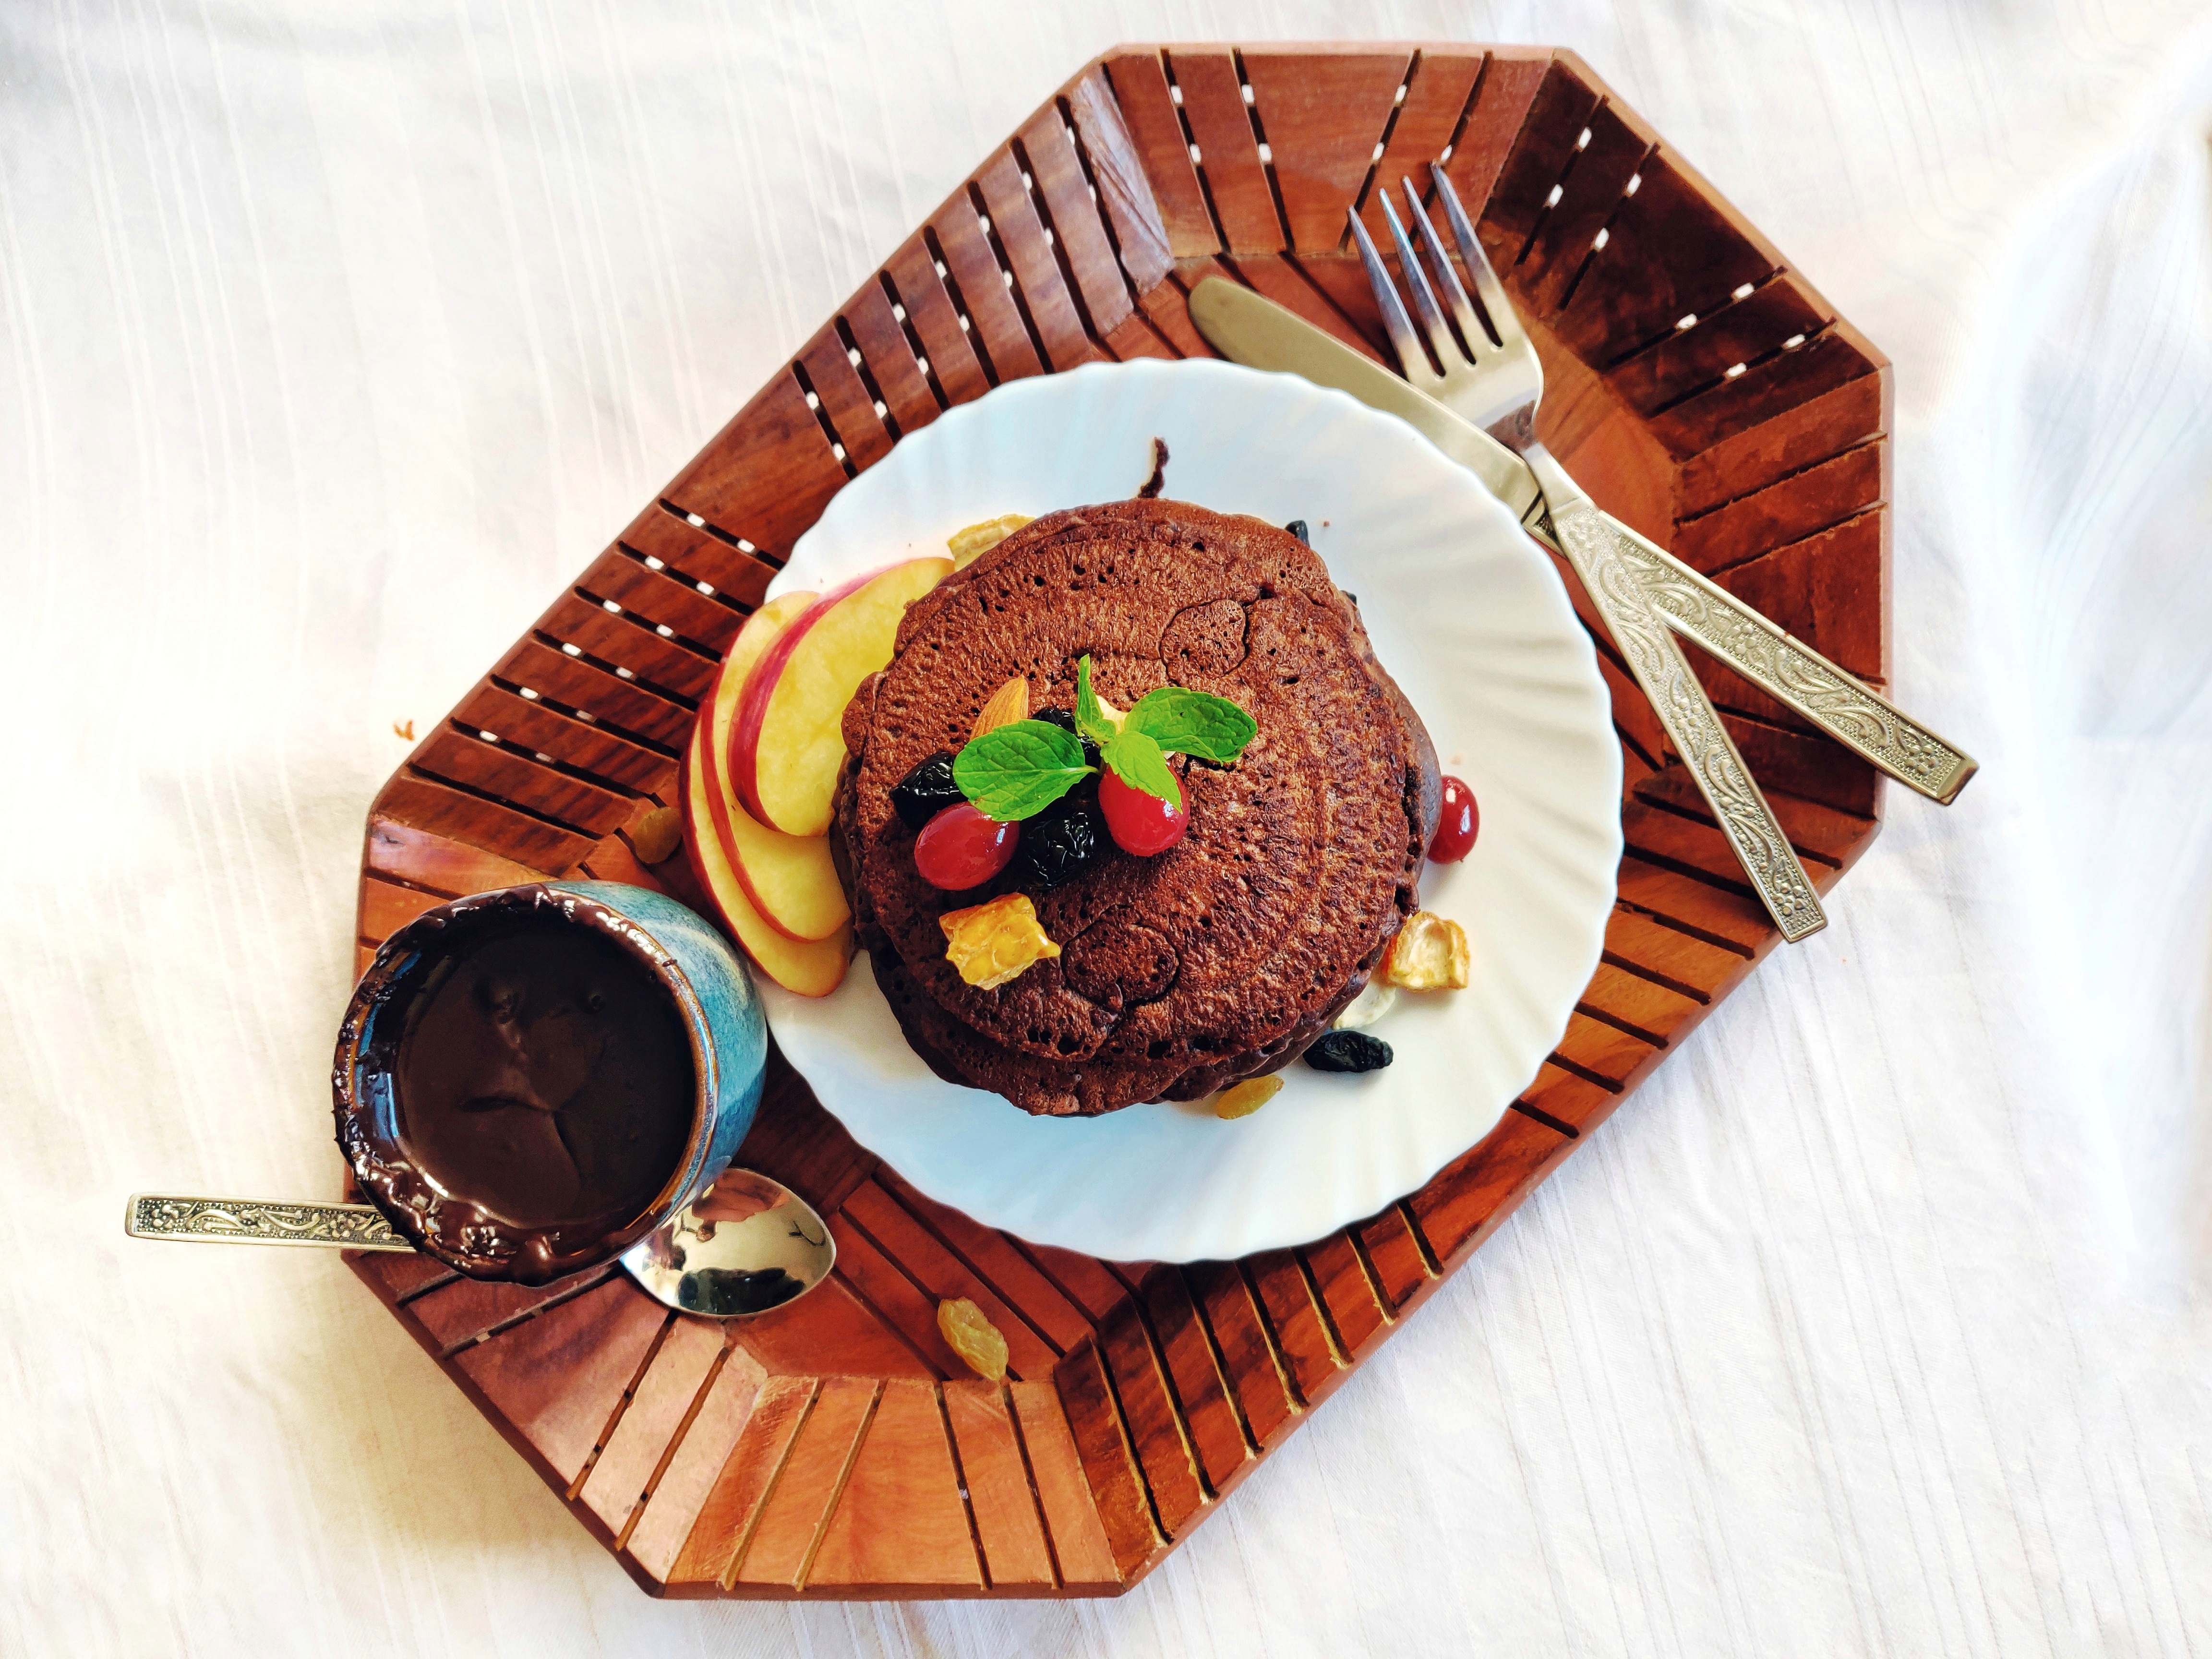 Pillsbury chocolate pancake